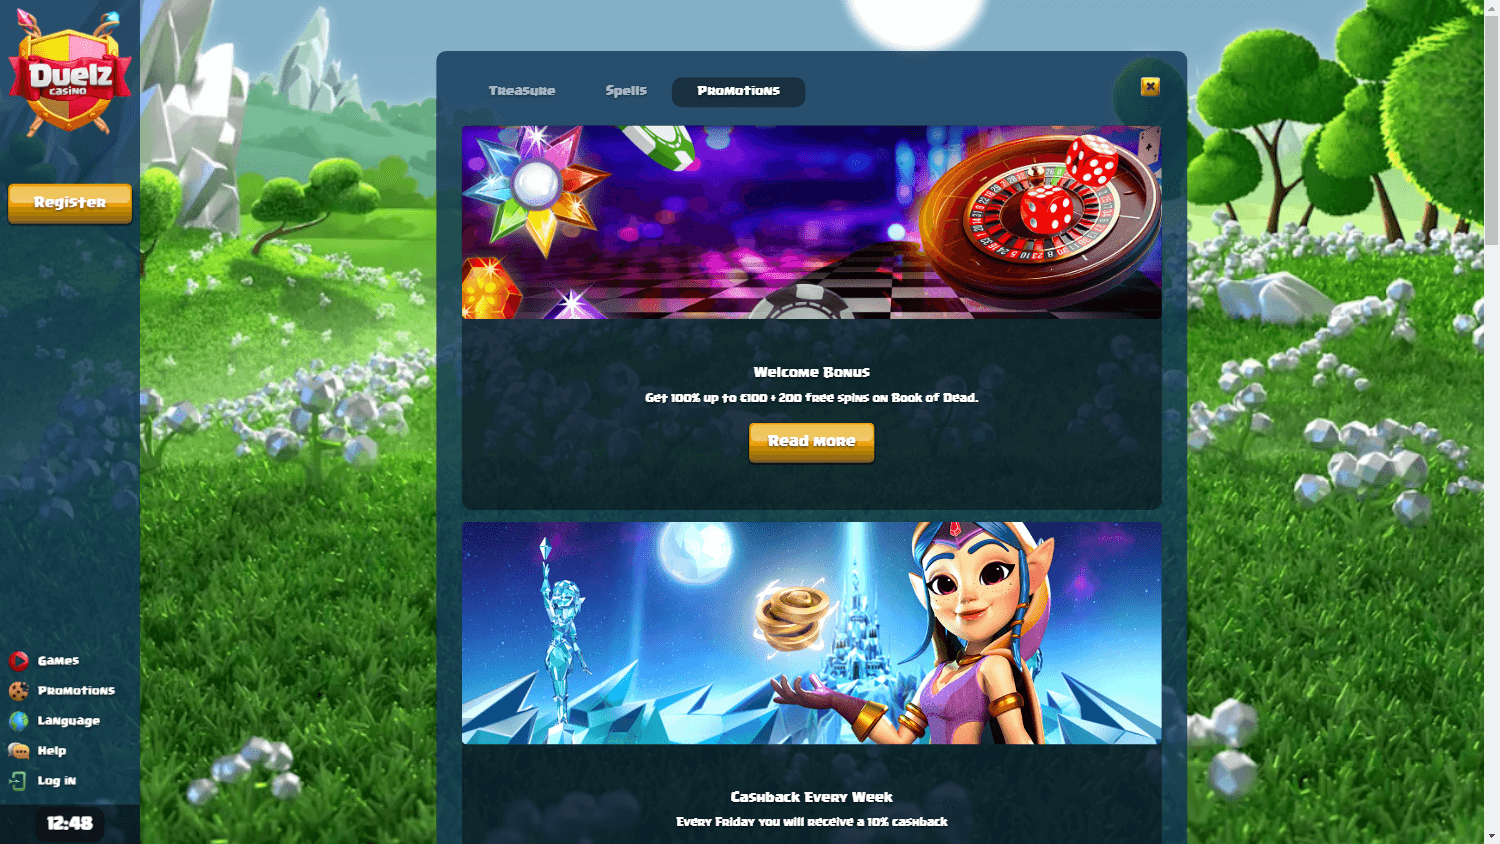 duelz_casino_promotions_desktop